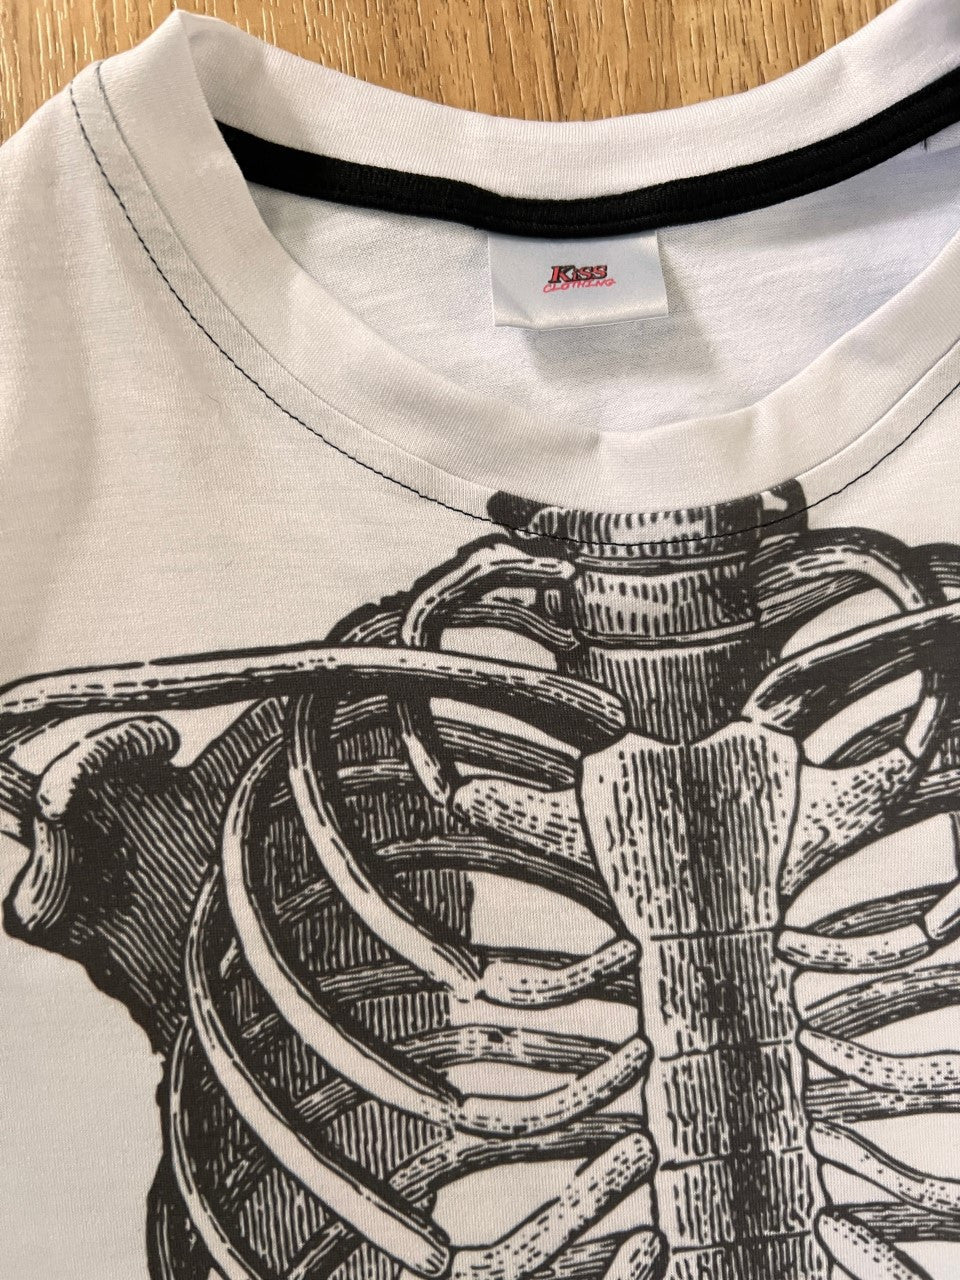 Ribcage KiSS KIDS T-Shirt - Skeleton - Bones Grunge